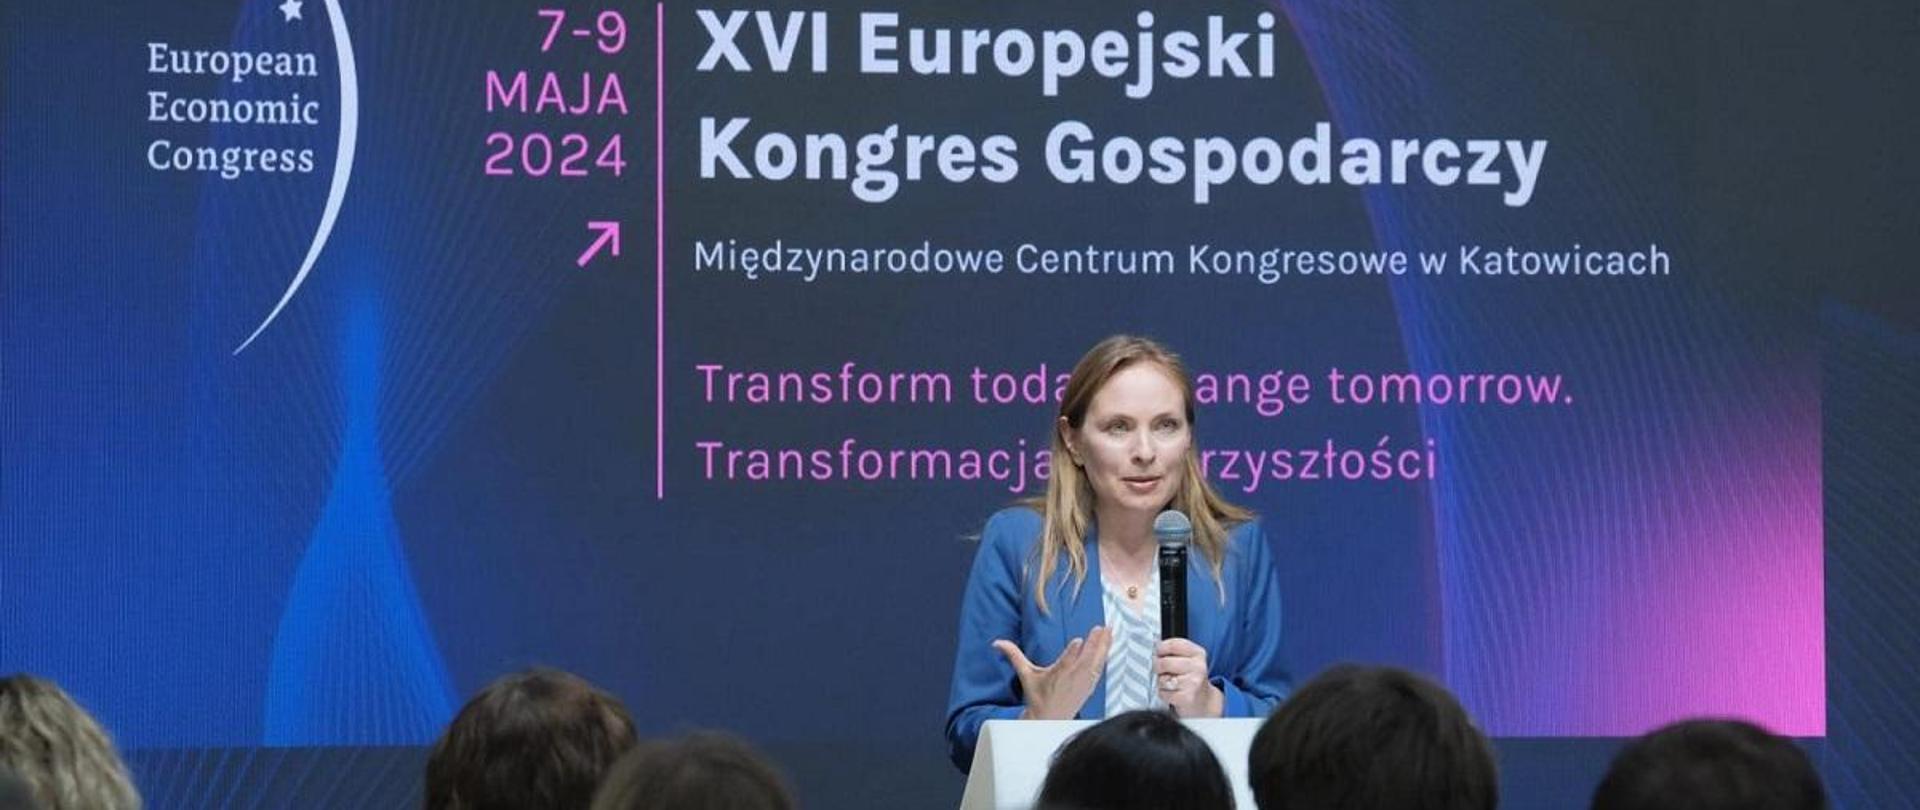 Minister funduszy i polityki regionalnej Katarzyna Pełczyńska-Nałęcz stoi przy pulpicie z mikrofonem, za jej plecami grafika granatowo-fioletowa z napisem "Fundusze unijne – czas najwyższy”
